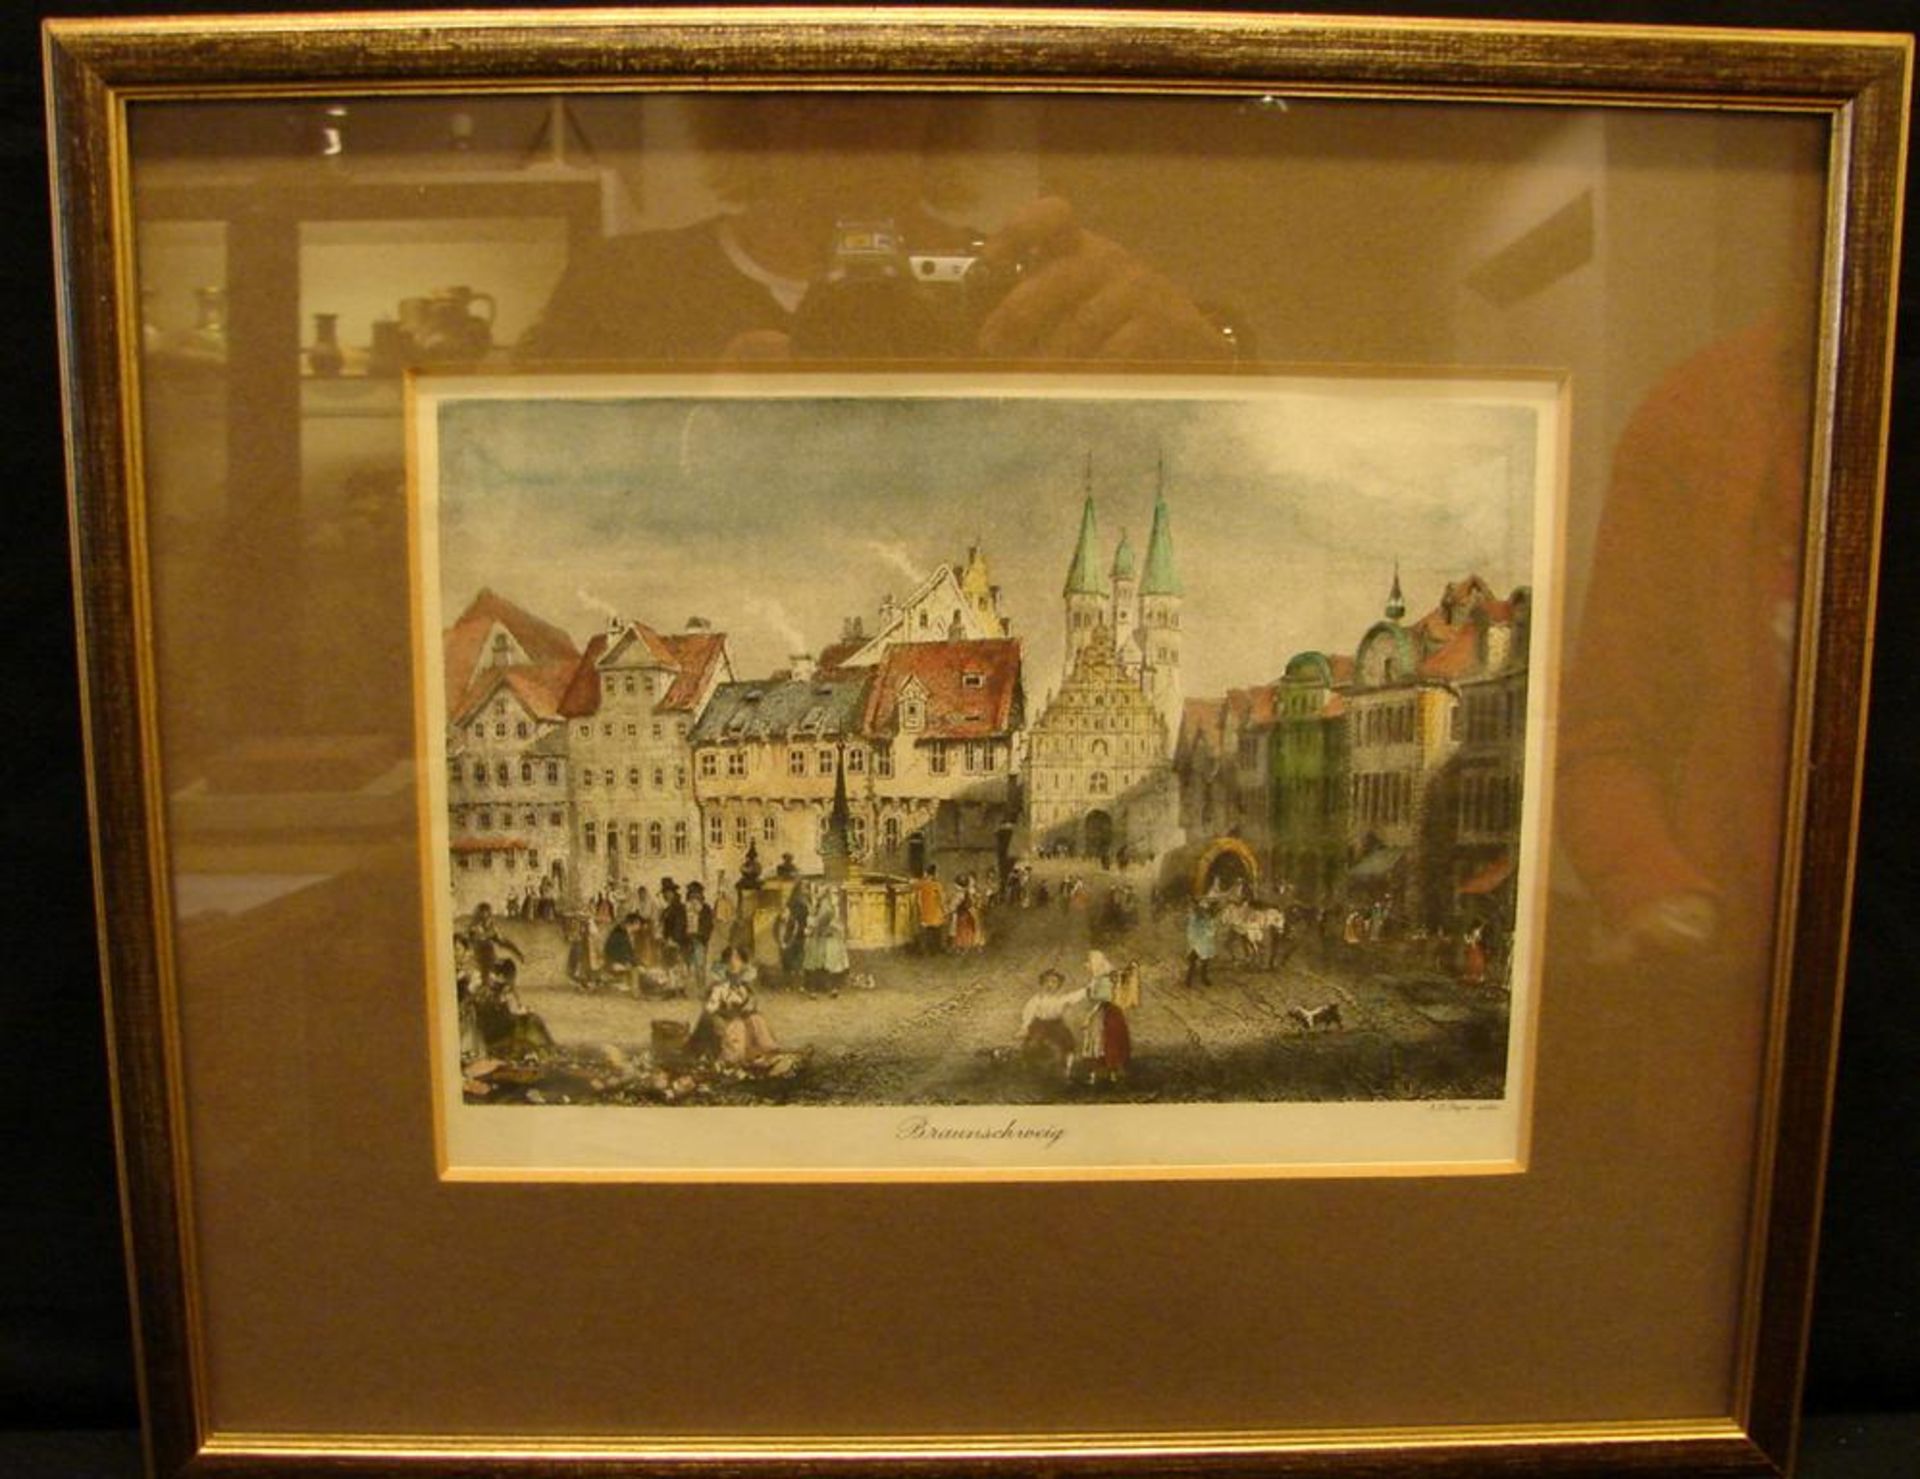 Grafik/Stich, "Stadtansicht Braunschweig", ca. 28 x 22 cm- - -22.00 % buyer's premium on the